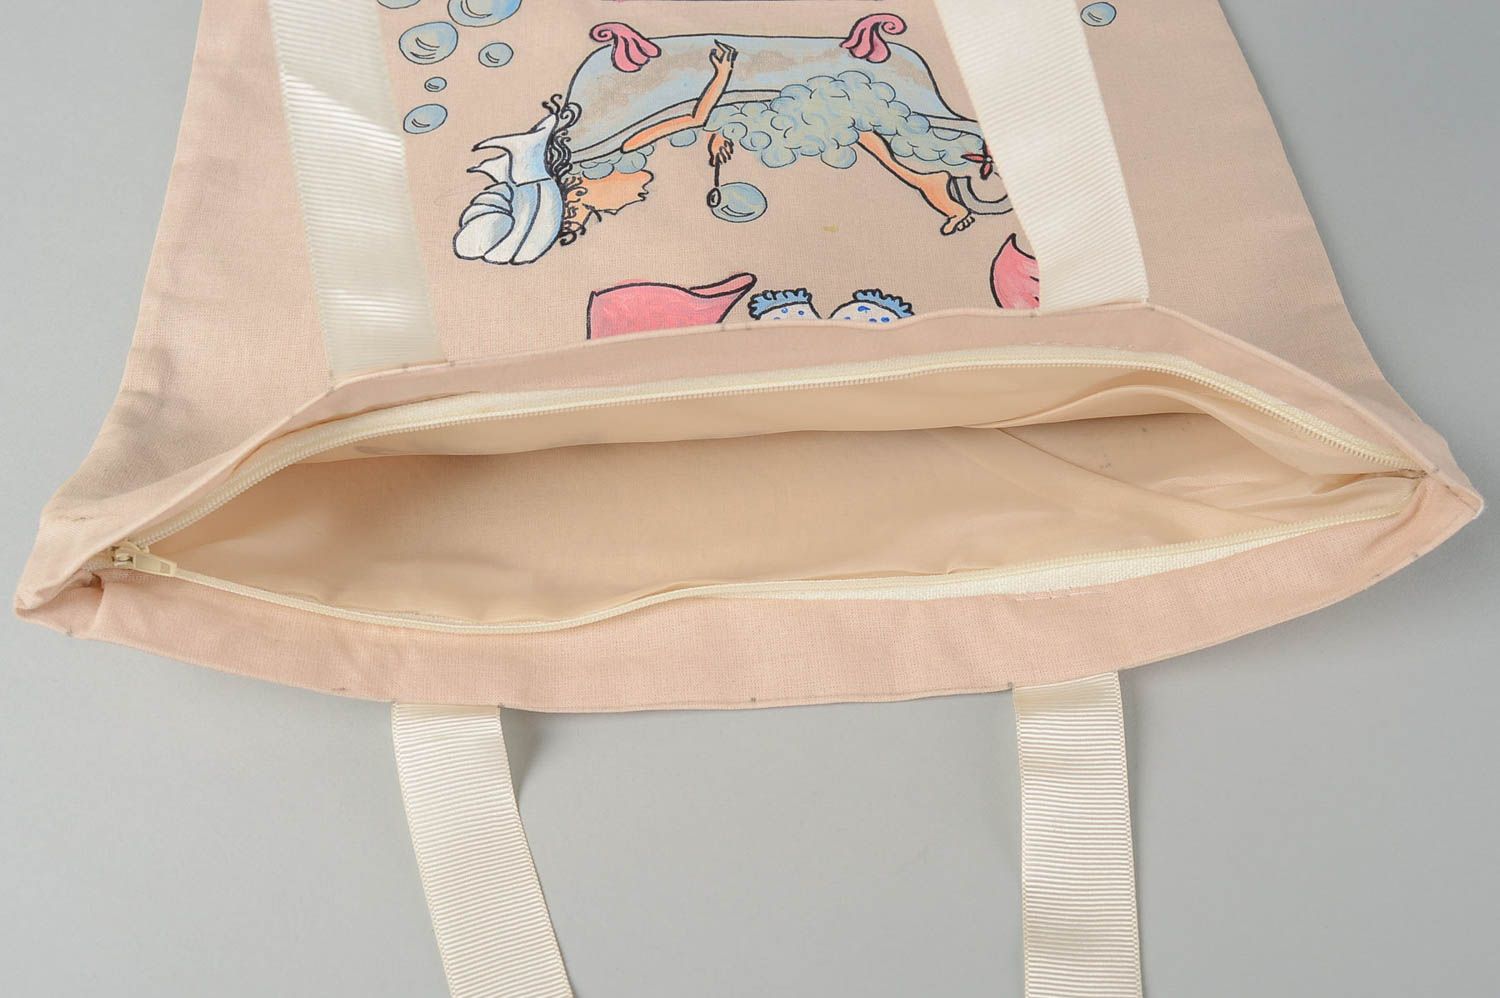 Сумка ручной работы сумка с рисунком девушки в ванной расписная женская сумка фото 4